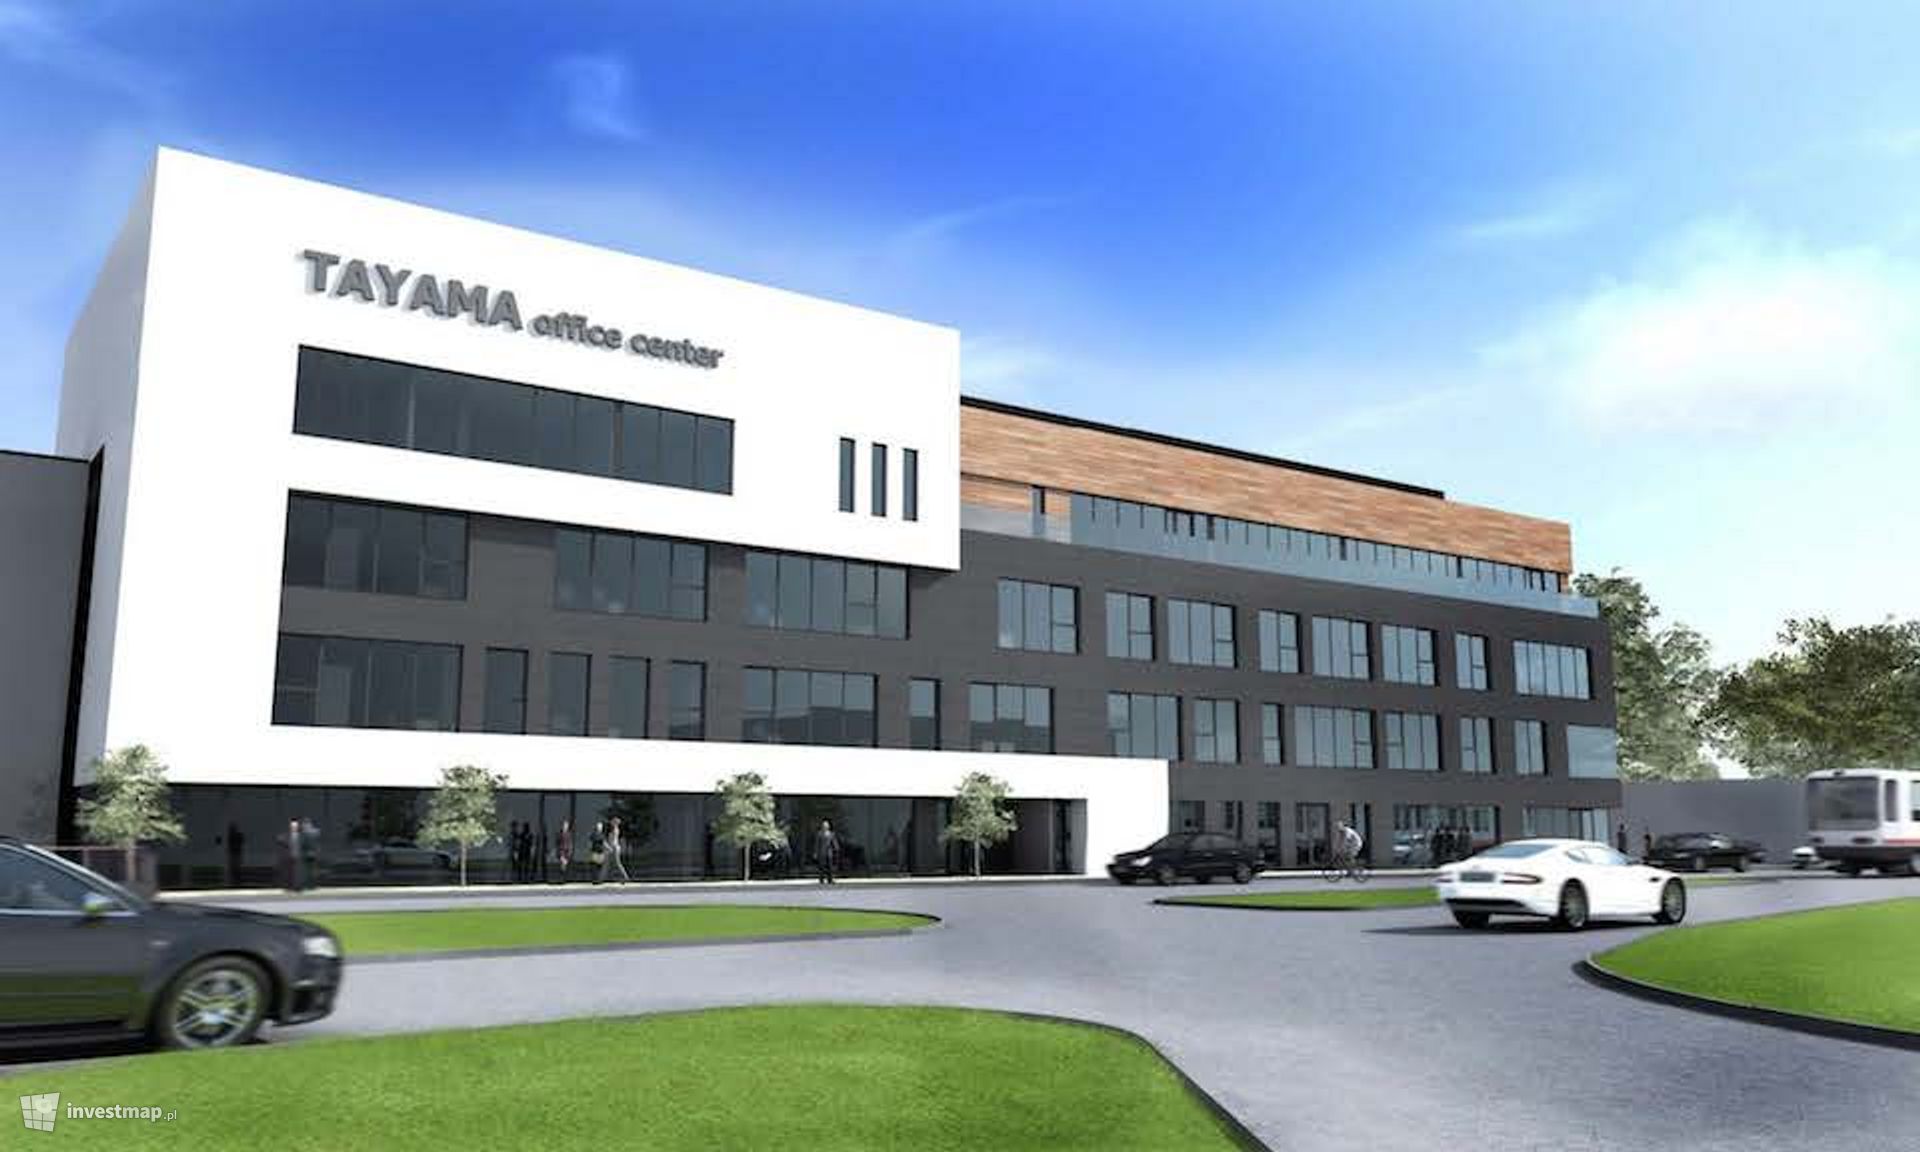 [Katowice] TAYAMA office center